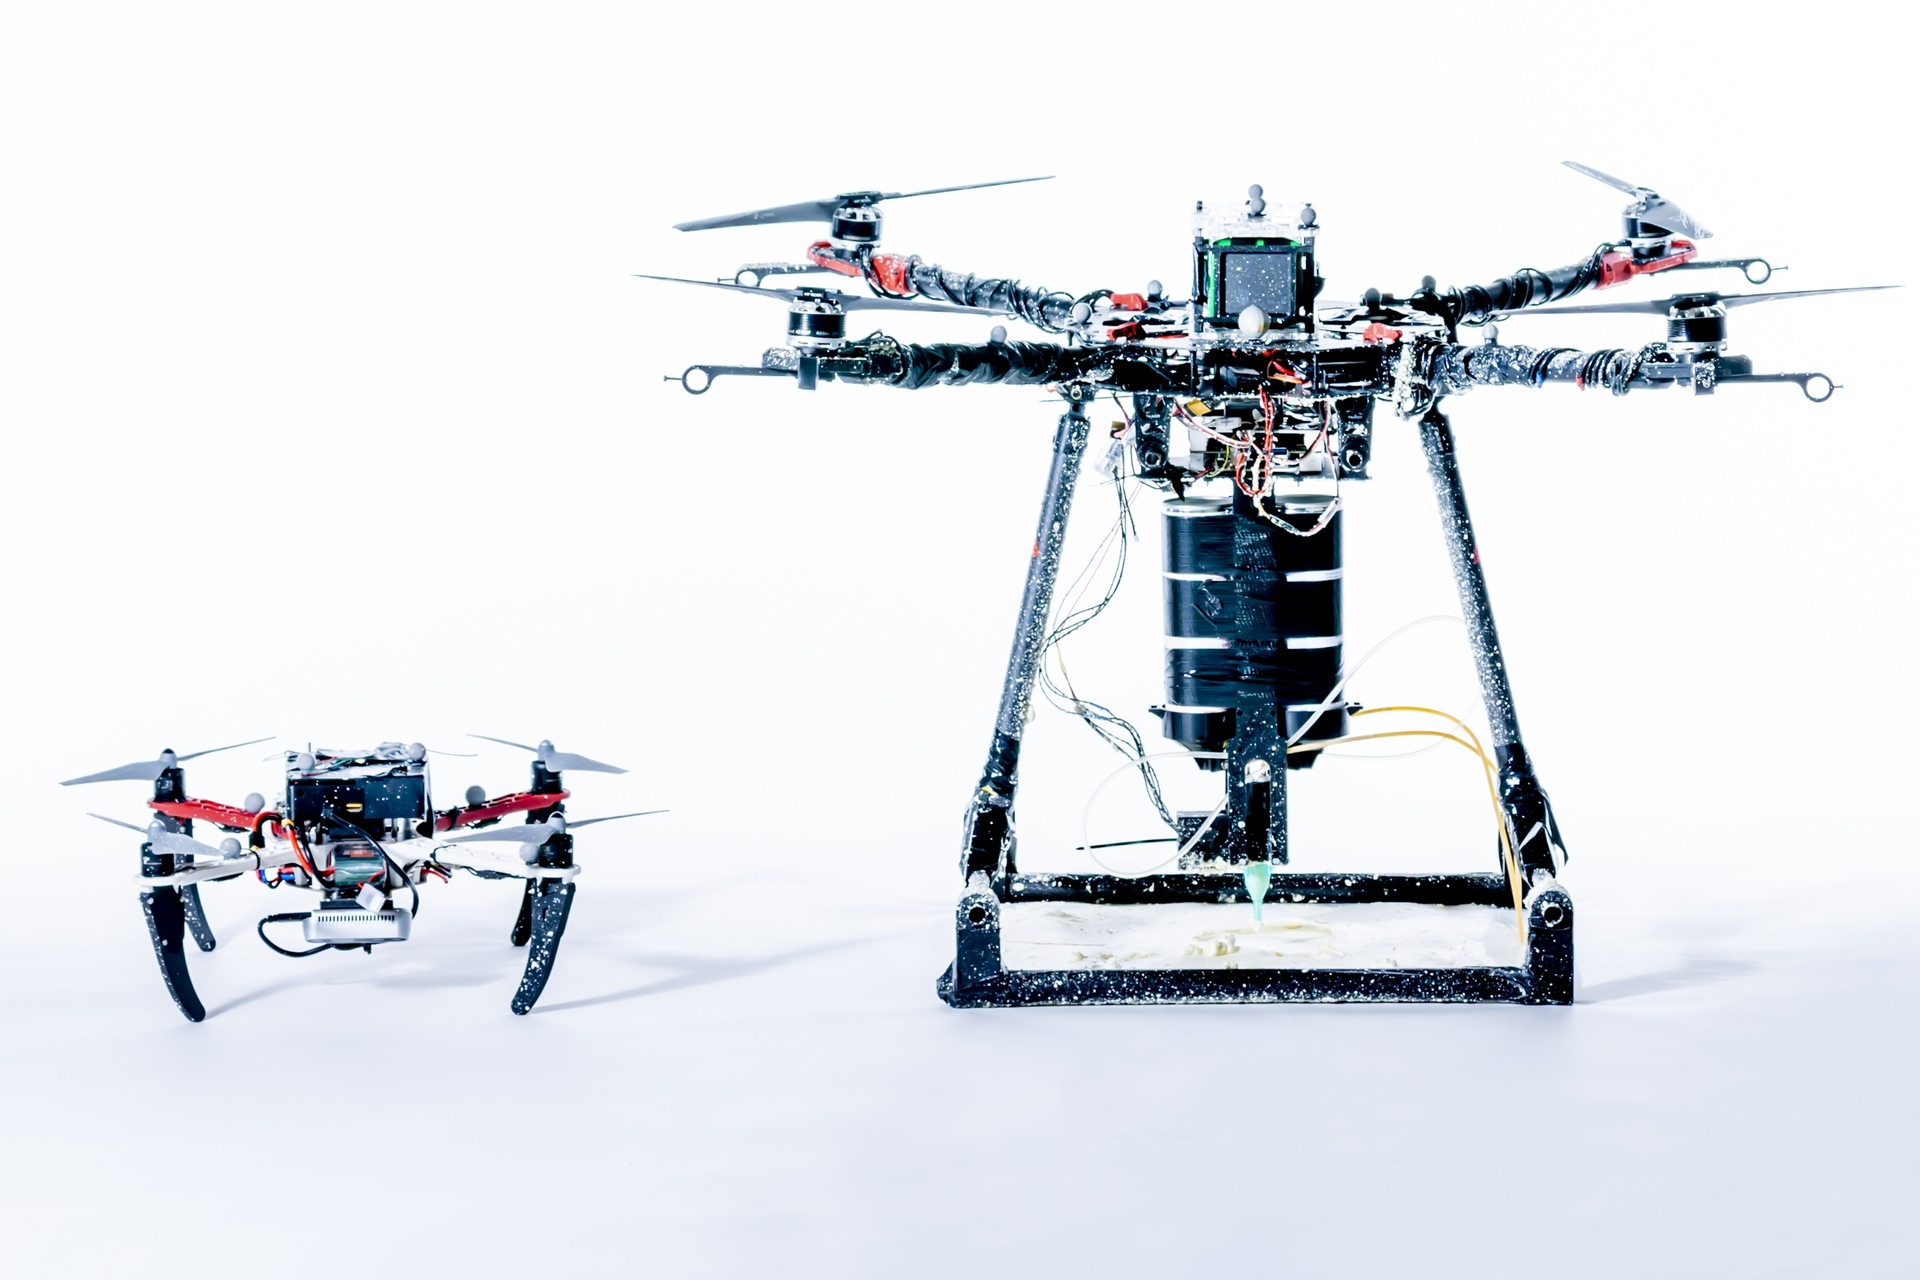 Birgalikda ishlaydigan dronlar: Aerial Additive Manufacturing yoki Aerial-AM orqali 3D bosib chiqarish